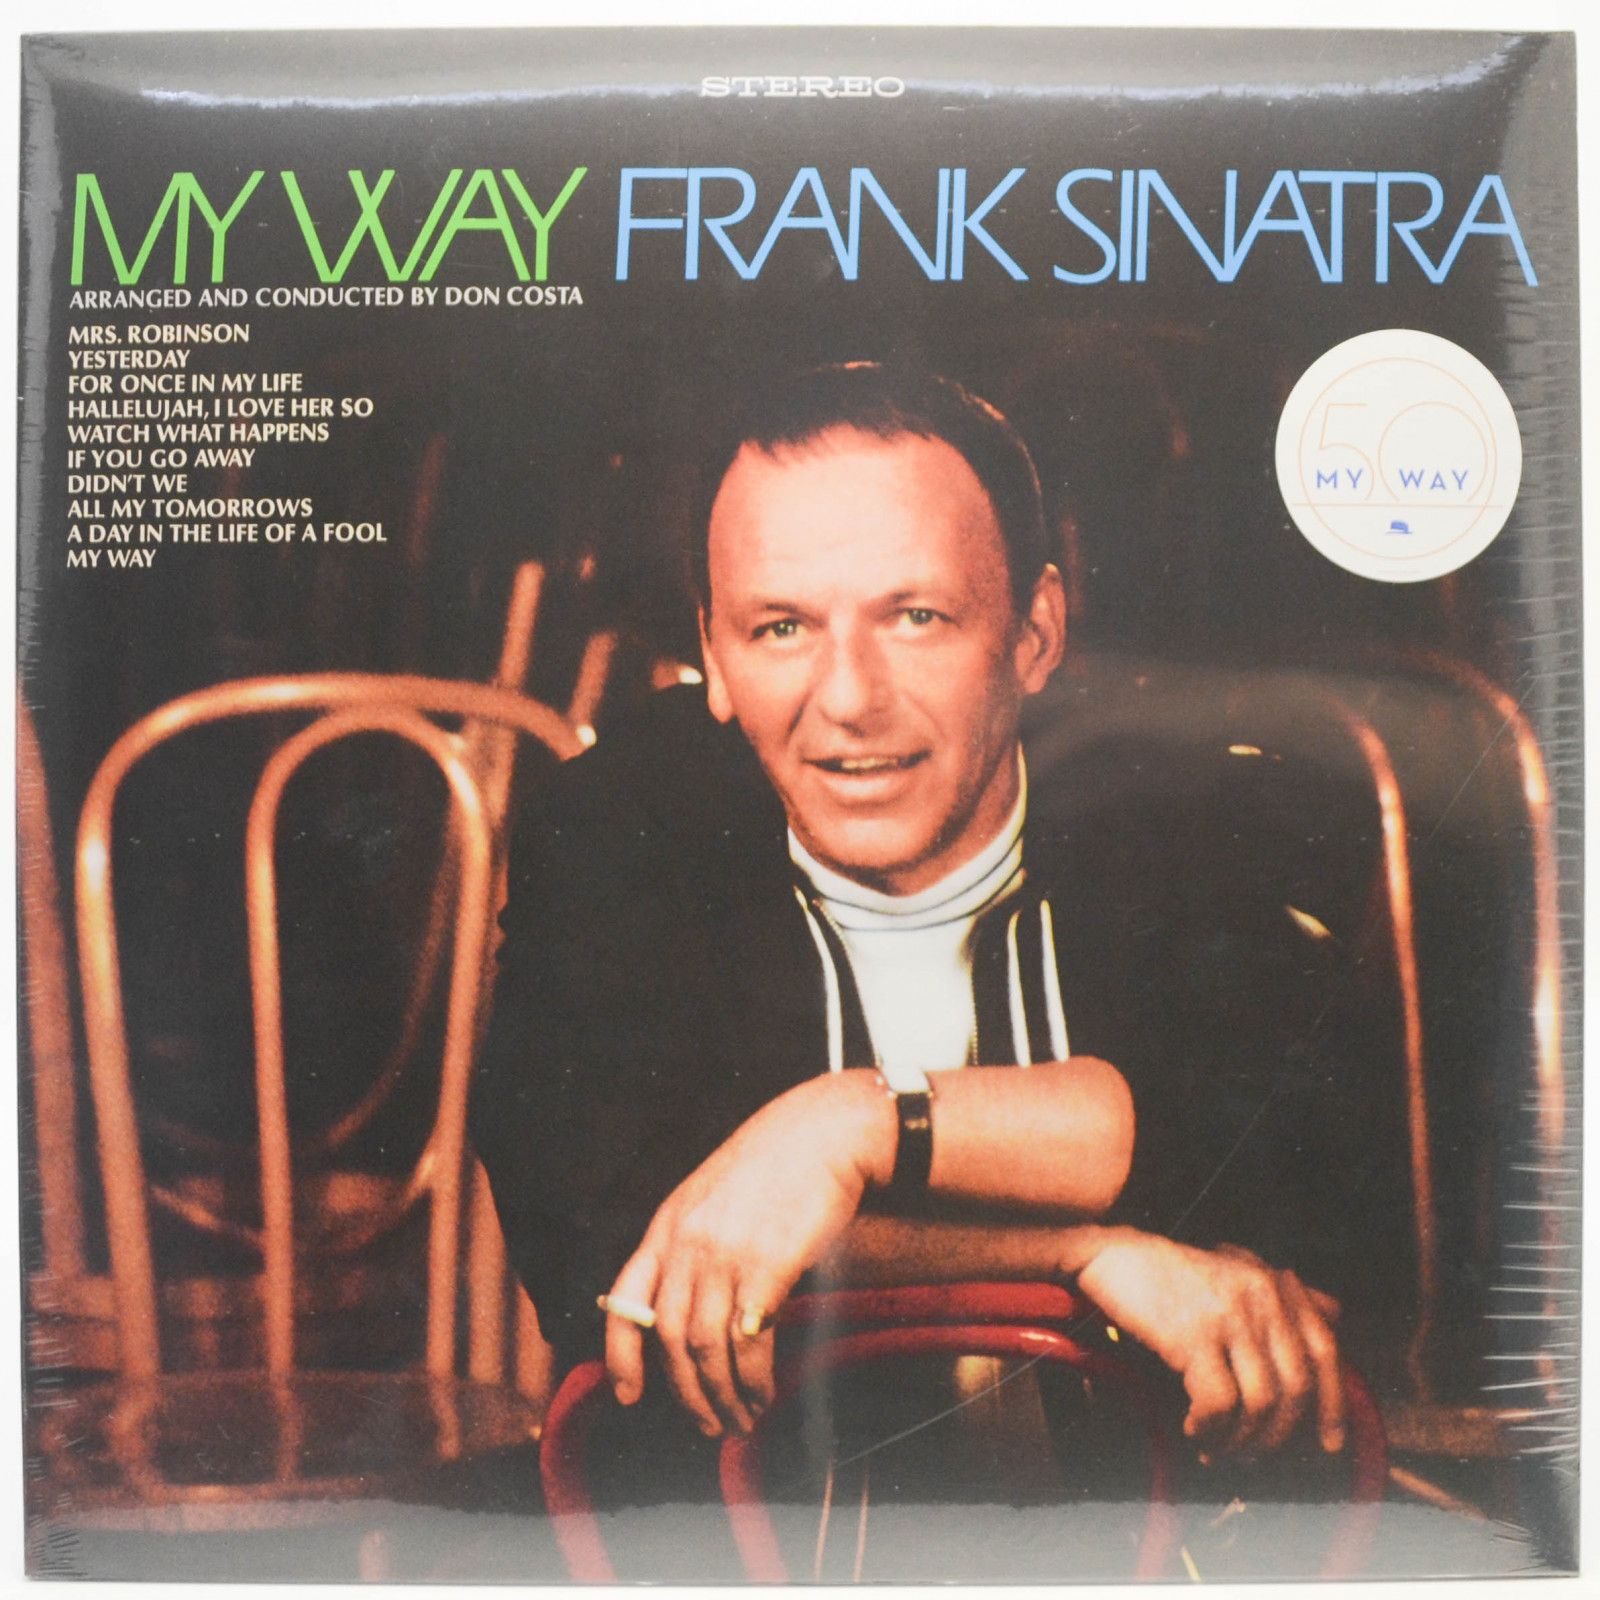 Frank Sinatra — My Way, 1969